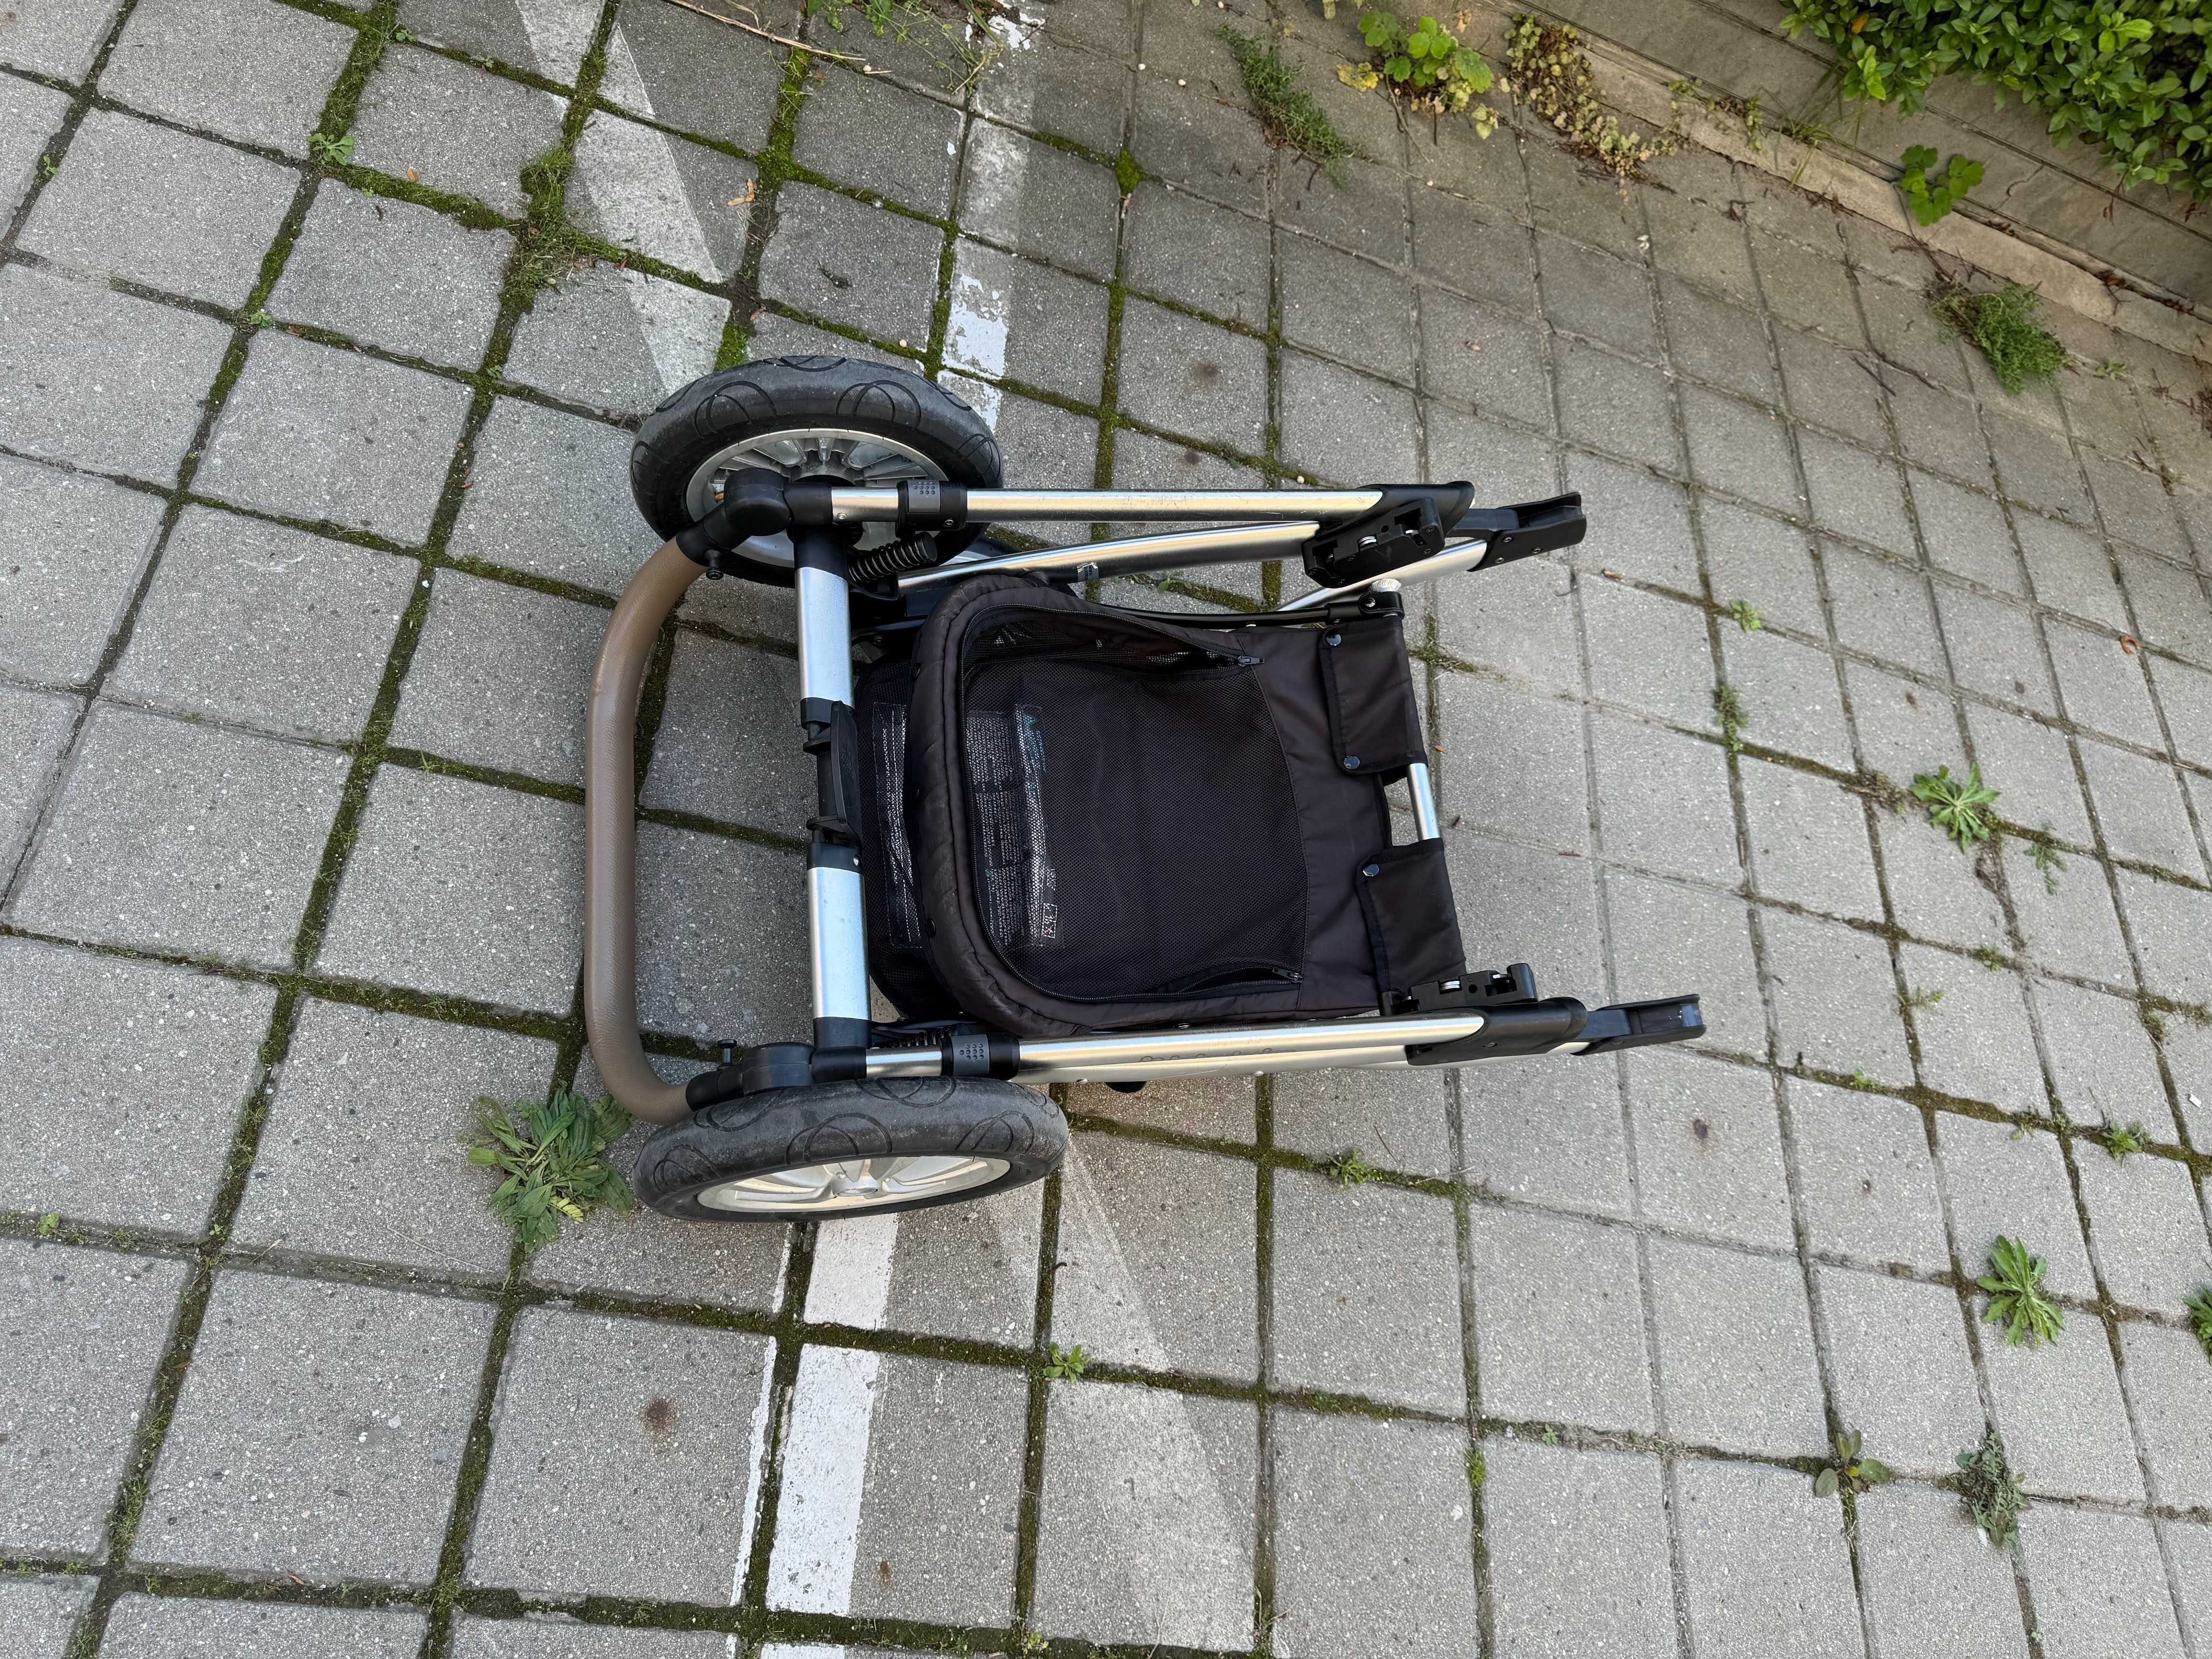 Бебешка количка Baby Design 2в1